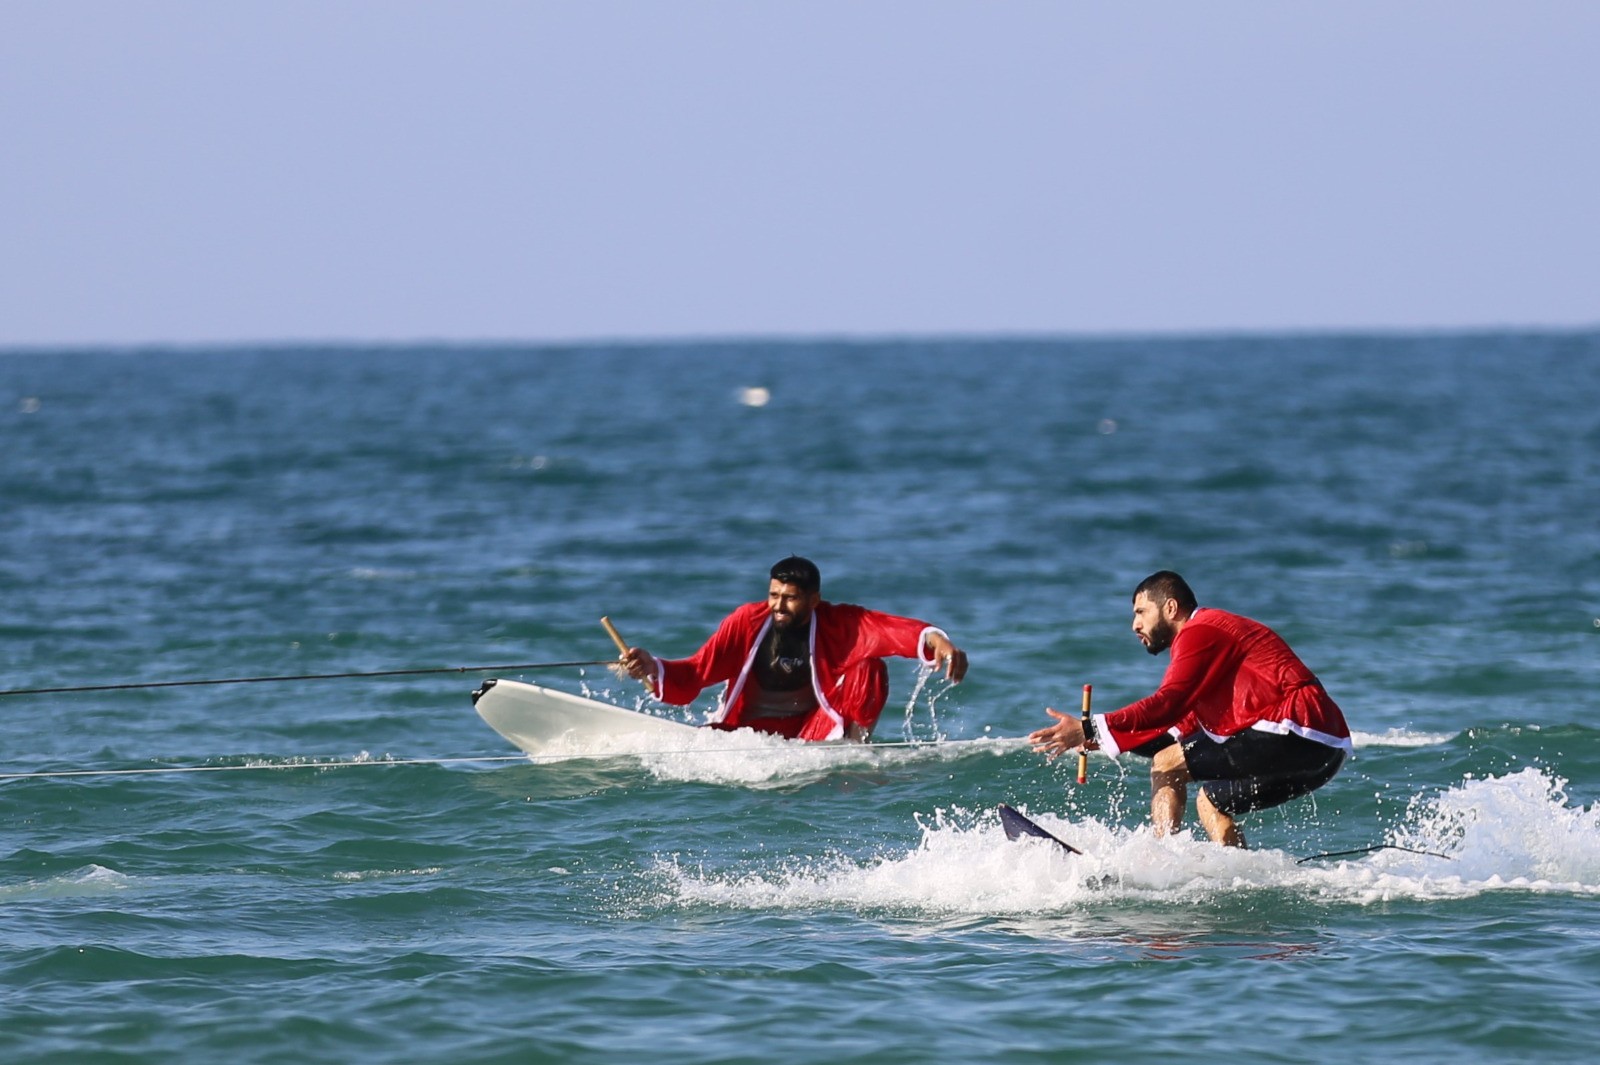 الاتحاد الفلسطيني للشراع والتجديف ينظّم فعالية للتزلّج على شاطئ بحر غزّة 7.jpg